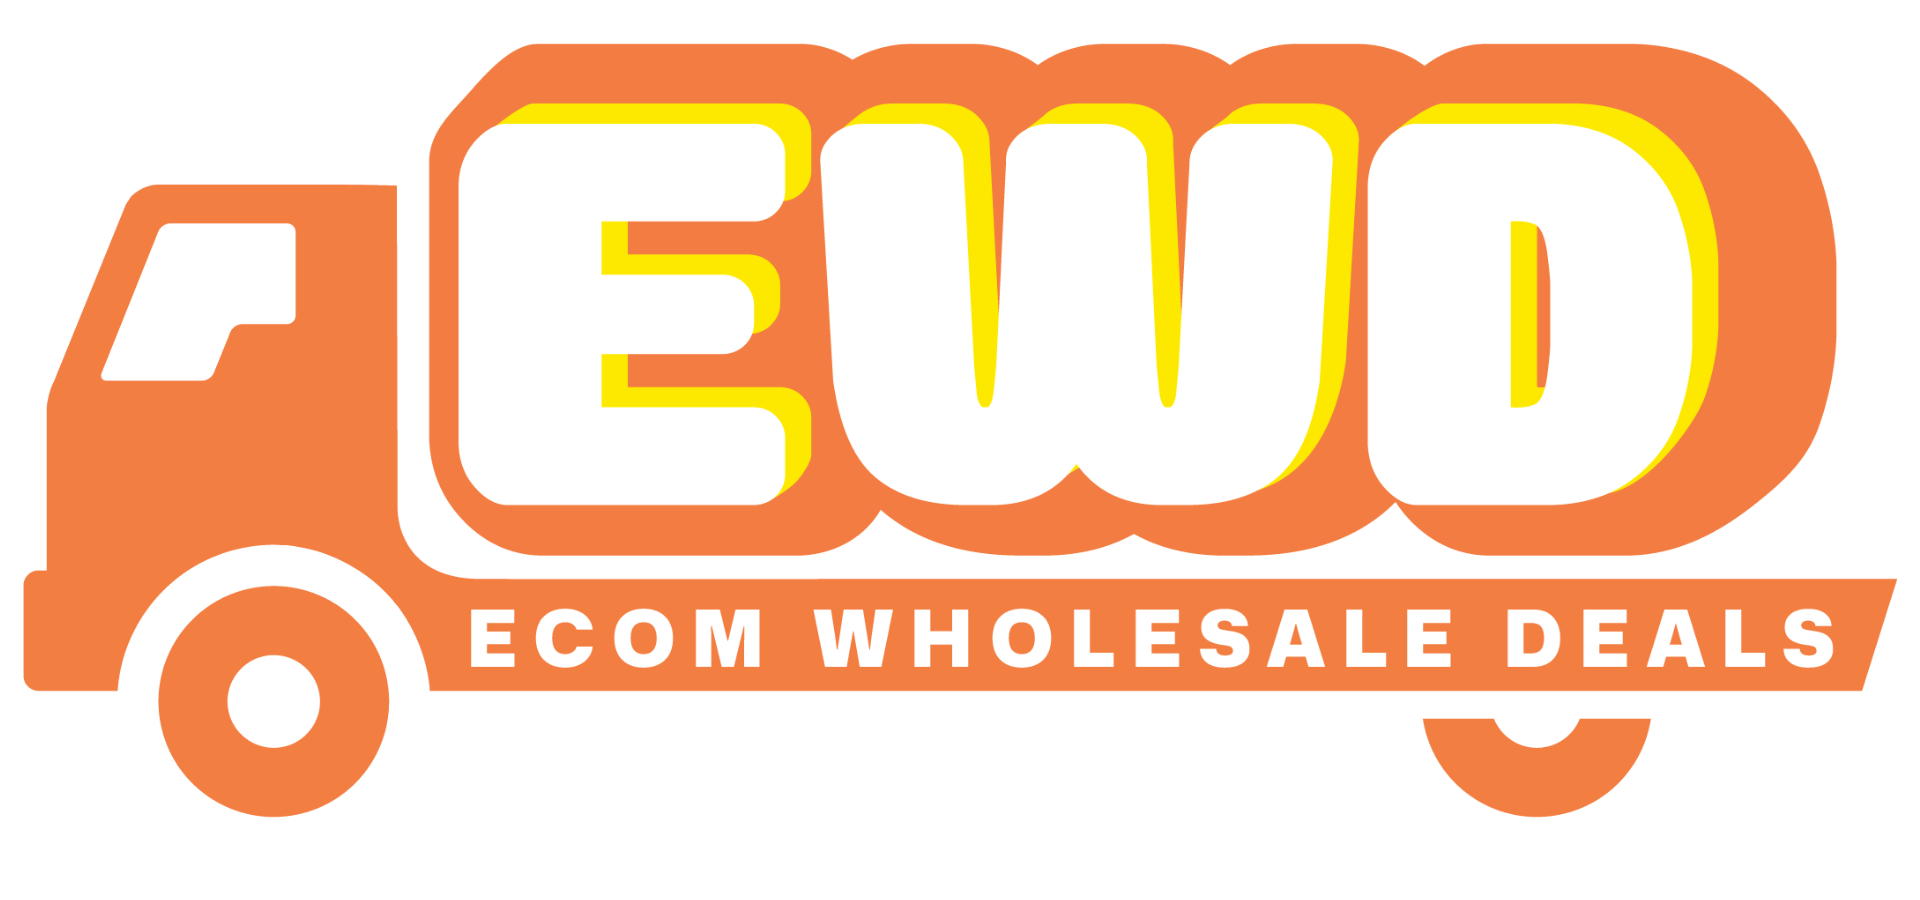 Ecom Wholesale Deals